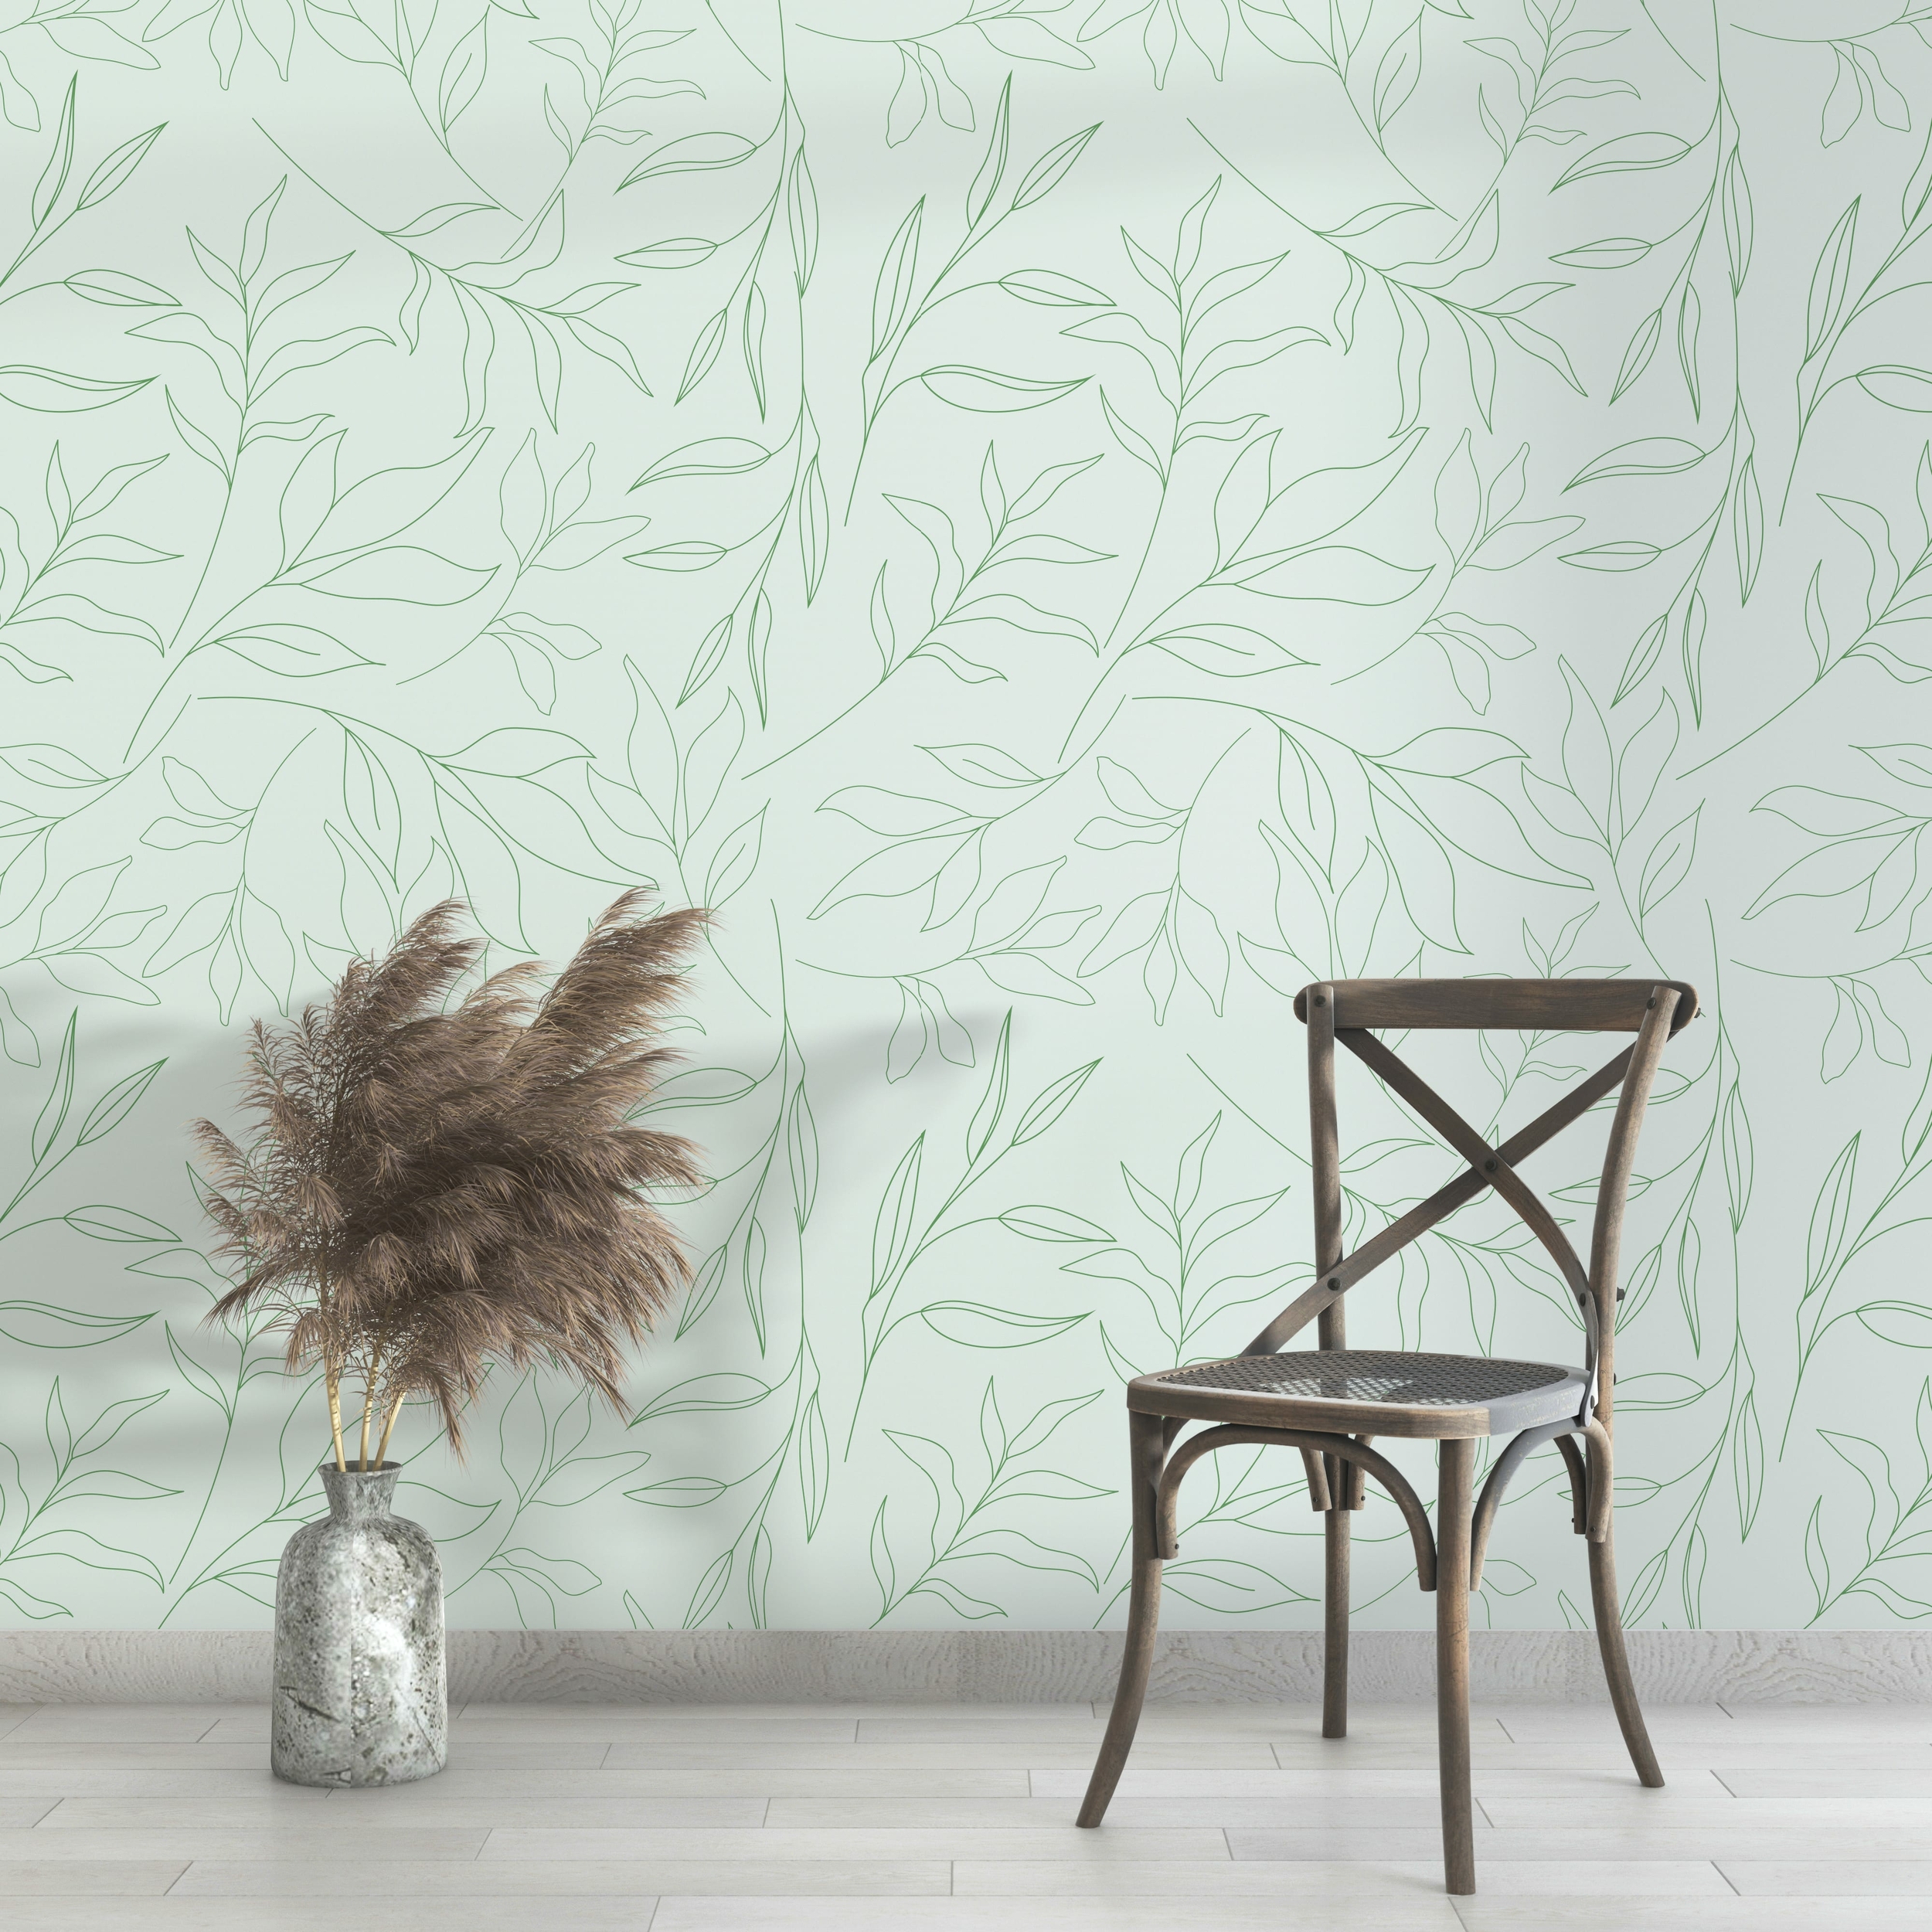 PP101-mur-papier-peint-adhesif-decoratif-revetement-vinyle-motifs-feuillages-vert-nature-plantes-renovation-meuble-mur-min